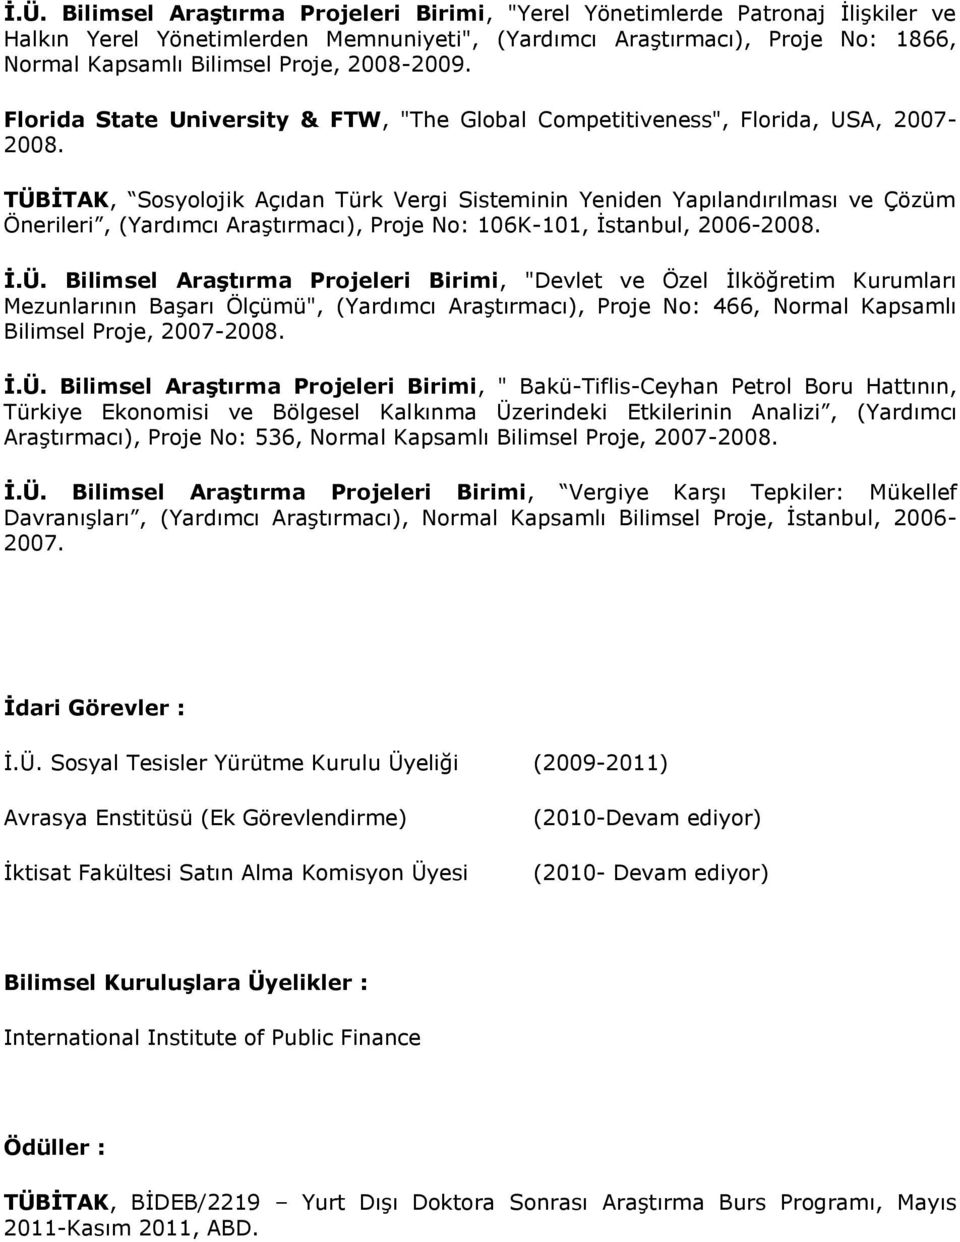 TÜBİTAK, Sosyolojik Açıdan Türk Vergi Sisteminin Yeniden Yapılandırılması ve Çözüm Önerileri, (Yardımcı Araştırmacı), Proje No: 106K-101, İstanbul, 2006-2008. İ.Ü. Bilimsel Araştırma Projeleri Birimi, "Devlet ve Özel İlköğretim Kurumları Mezunlarının Başarı Ölçümü", (Yardımcı Araştırmacı), Proje No: 466, Normal Kapsamlı Bilimsel Proje, 2007-2008.